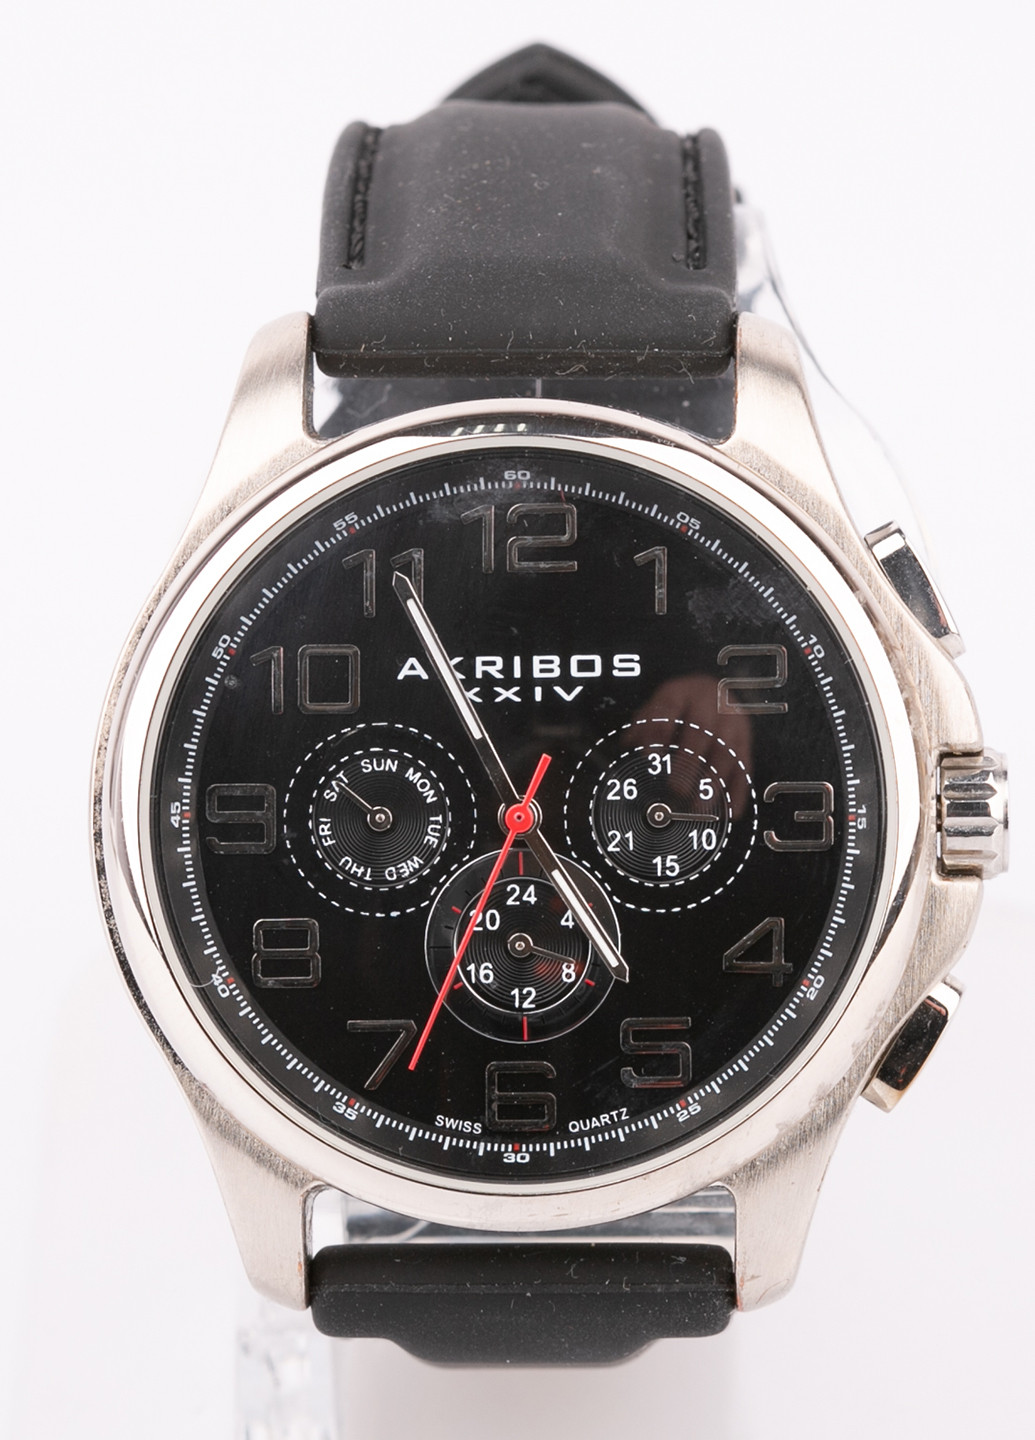 Часы AKRIBOS XXIV (251307383)